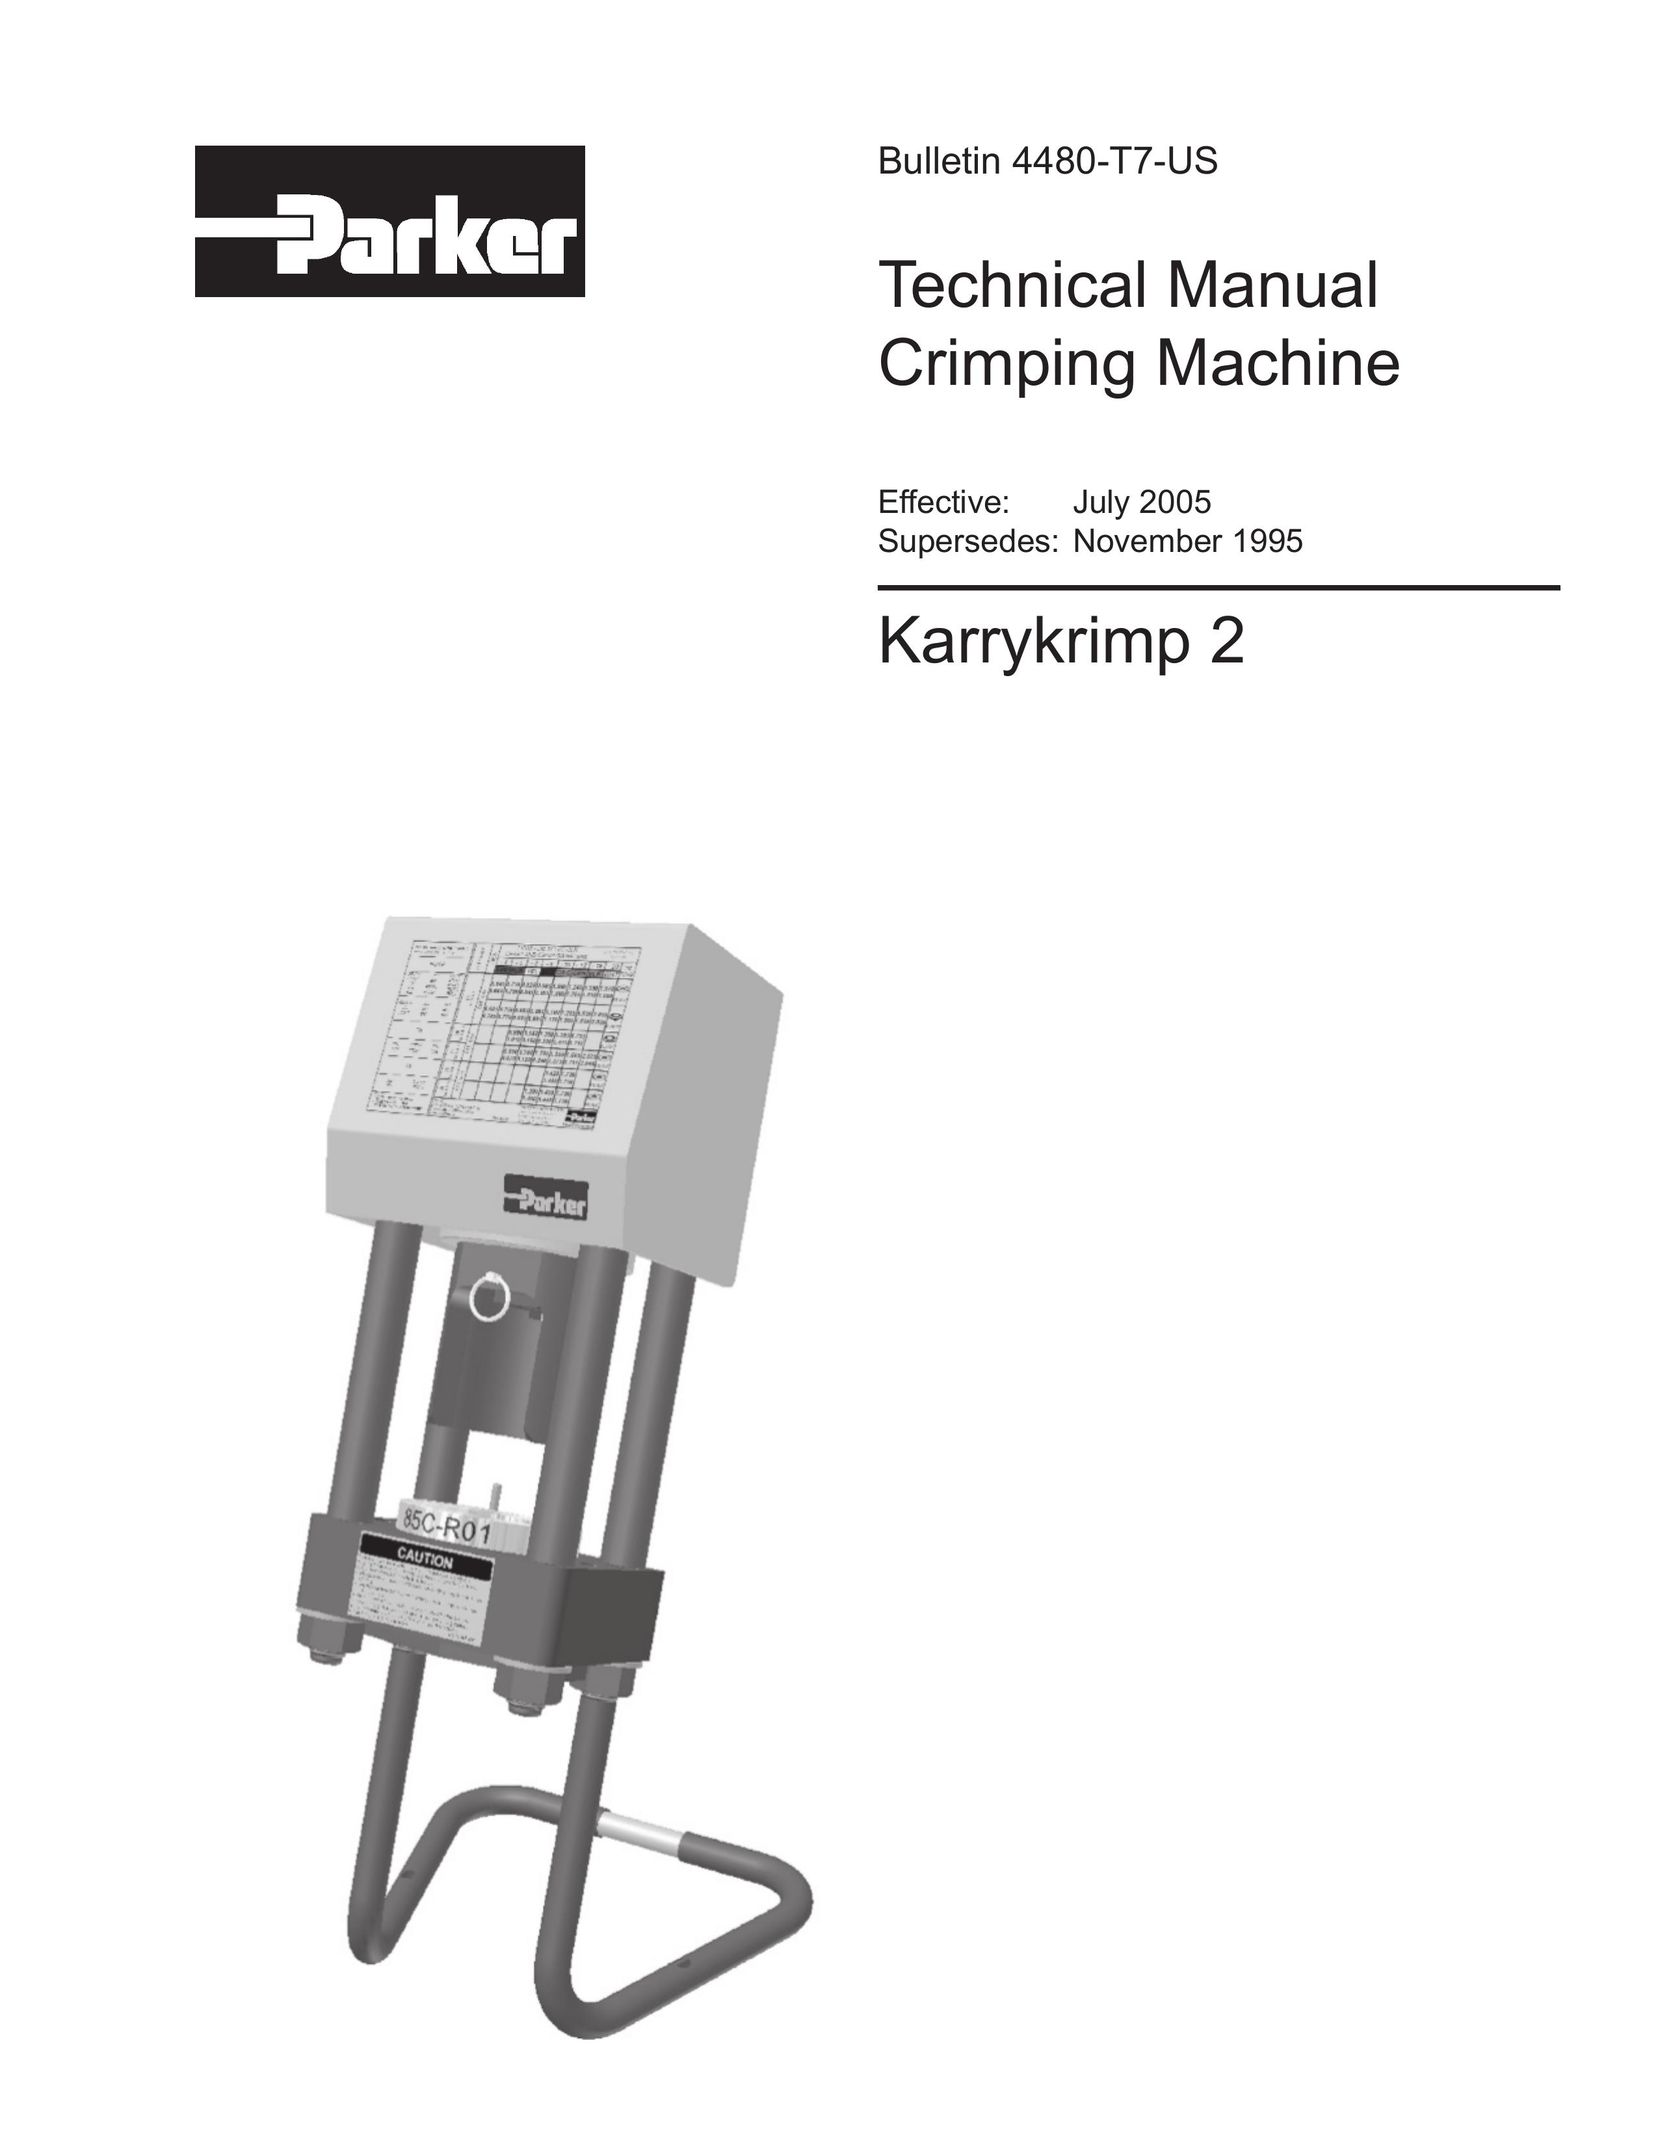 Parker Hannifin Karrykrimp 2 DVD VCR Combo User Manual